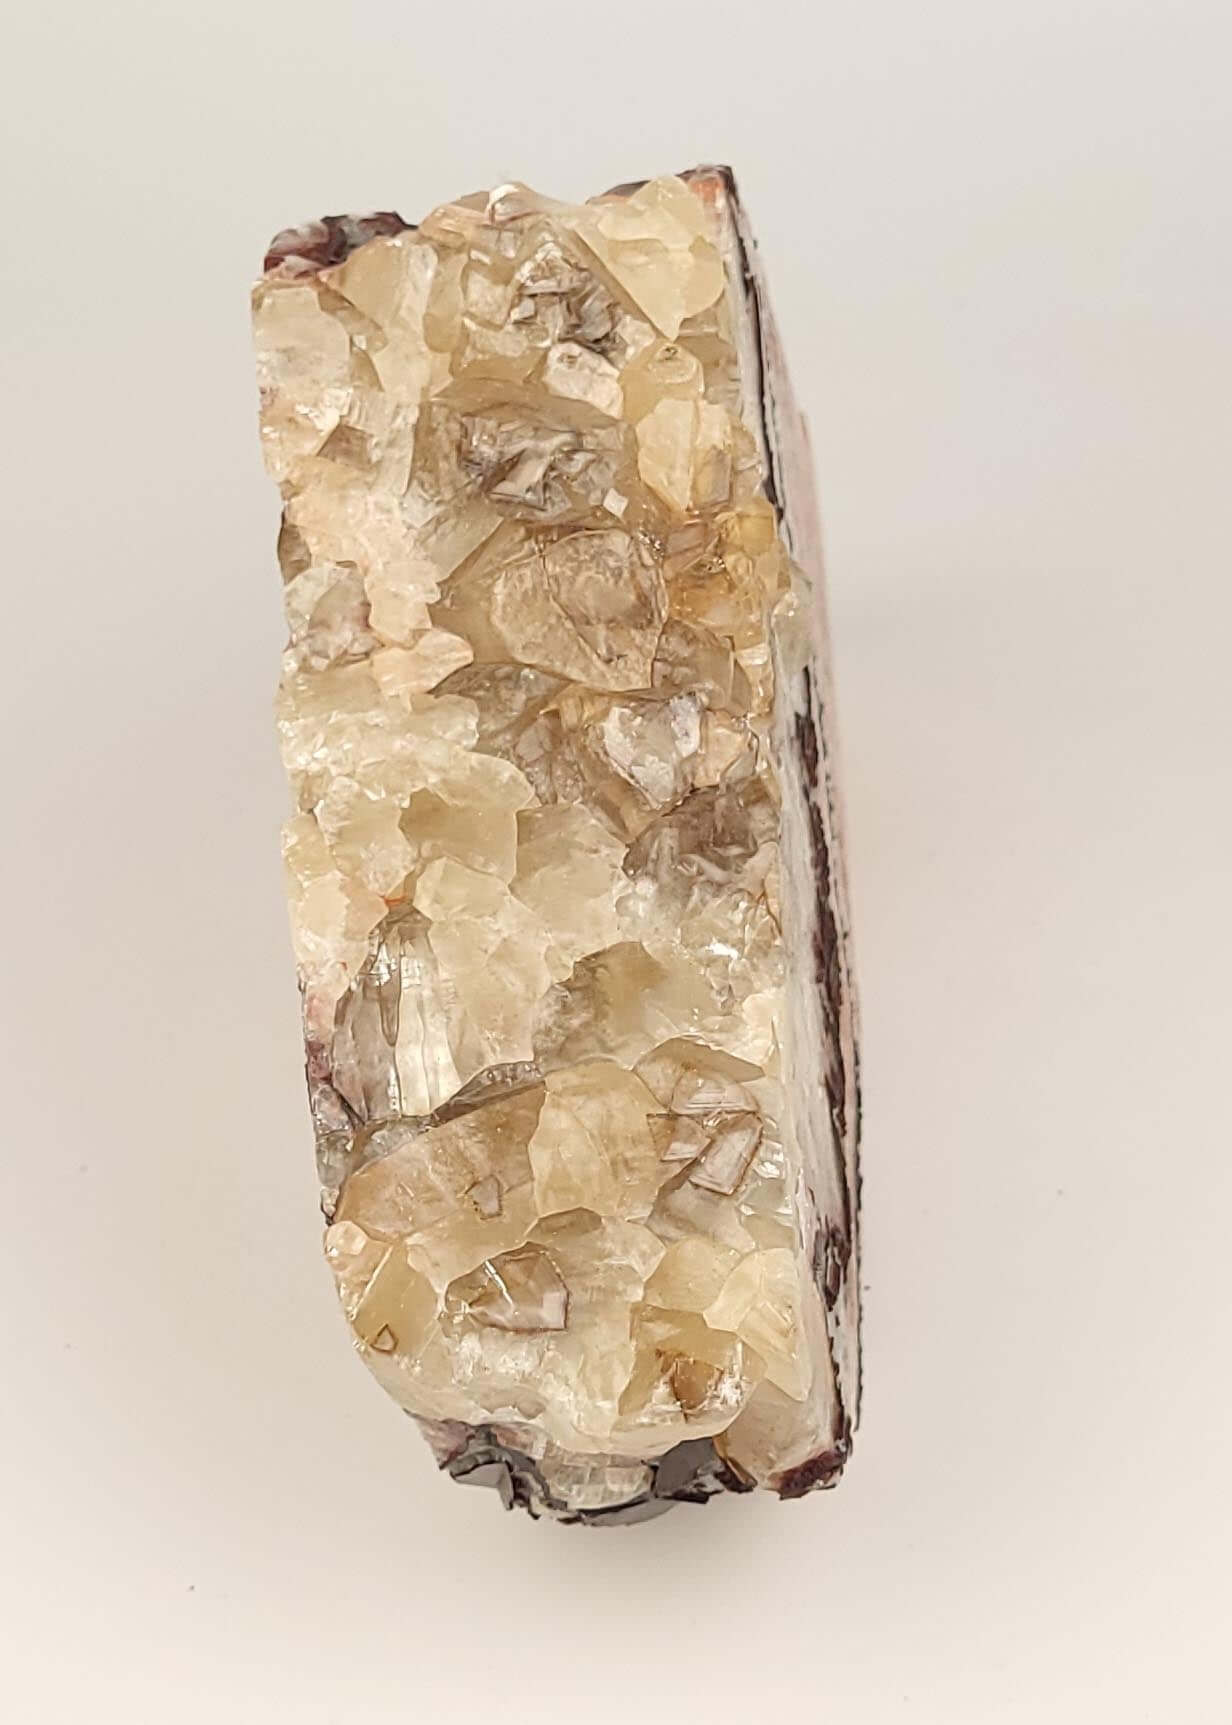 XL Tri-colored Calcite